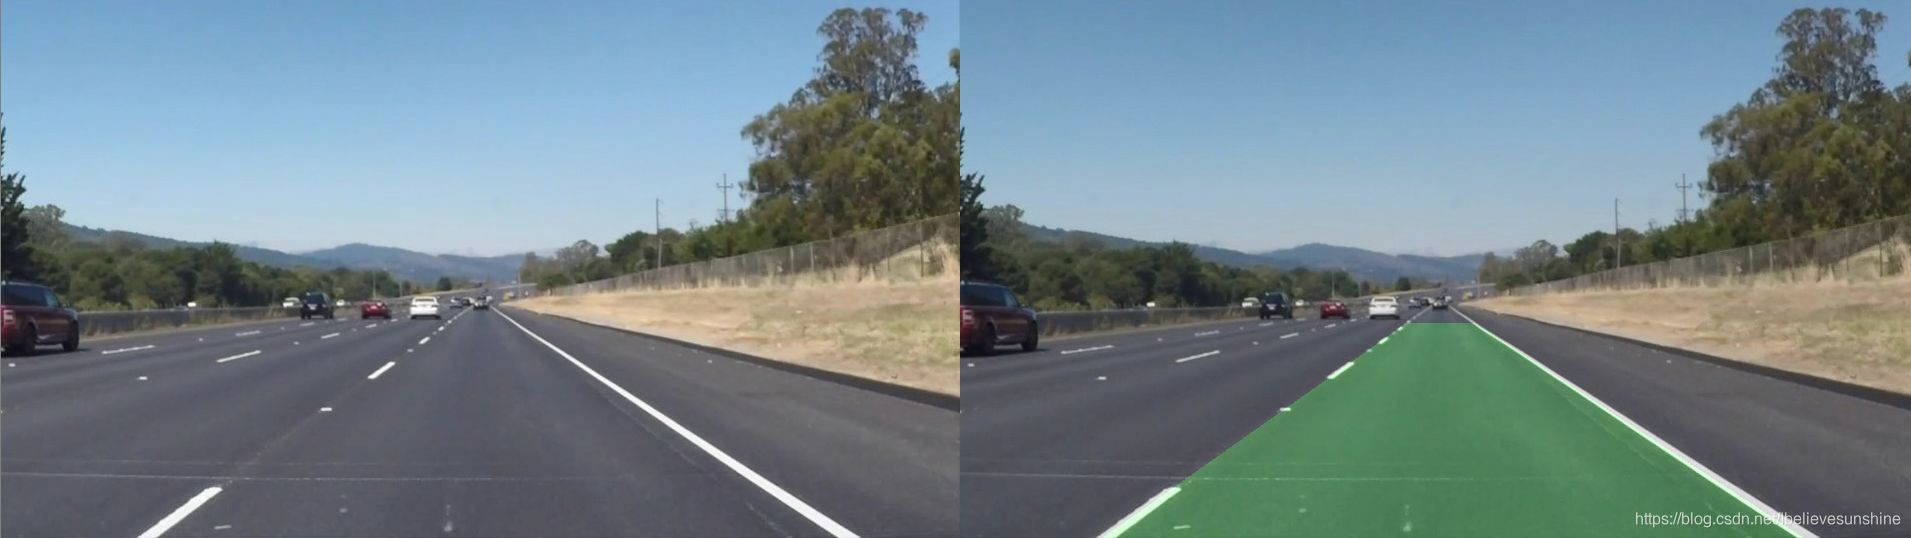 左图：原图；右图：车道检测结果